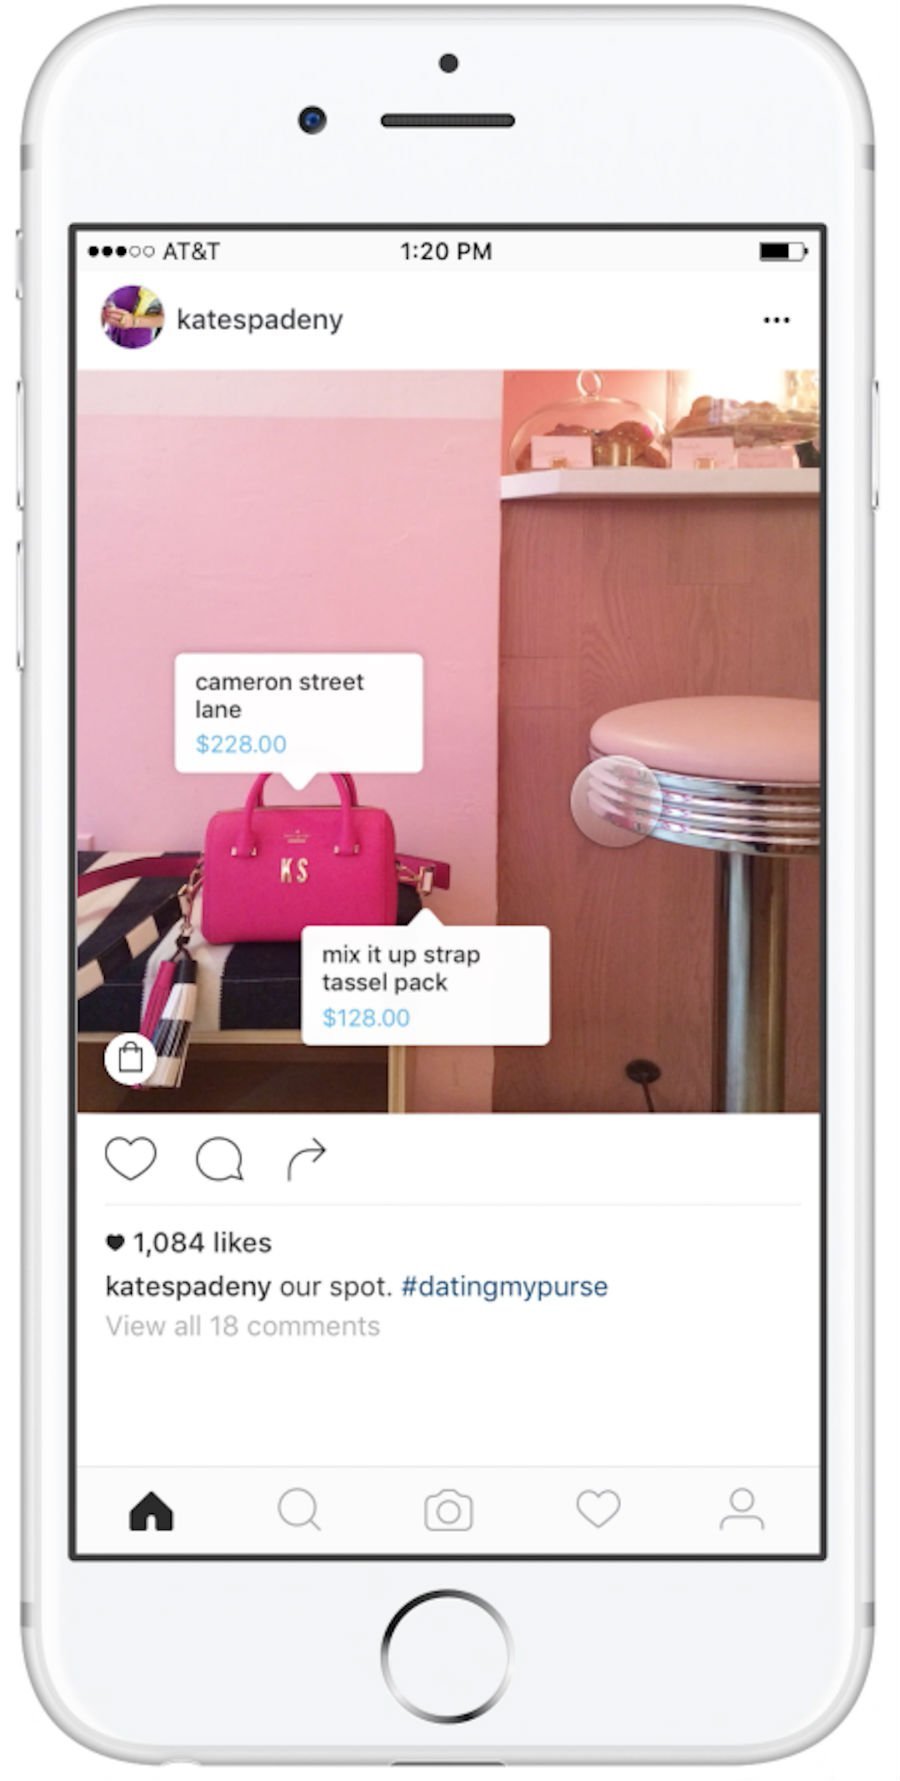 Nova funcionalidade do Instagram: tela permite comprar e pesquisar produtos que aparecem na foto 